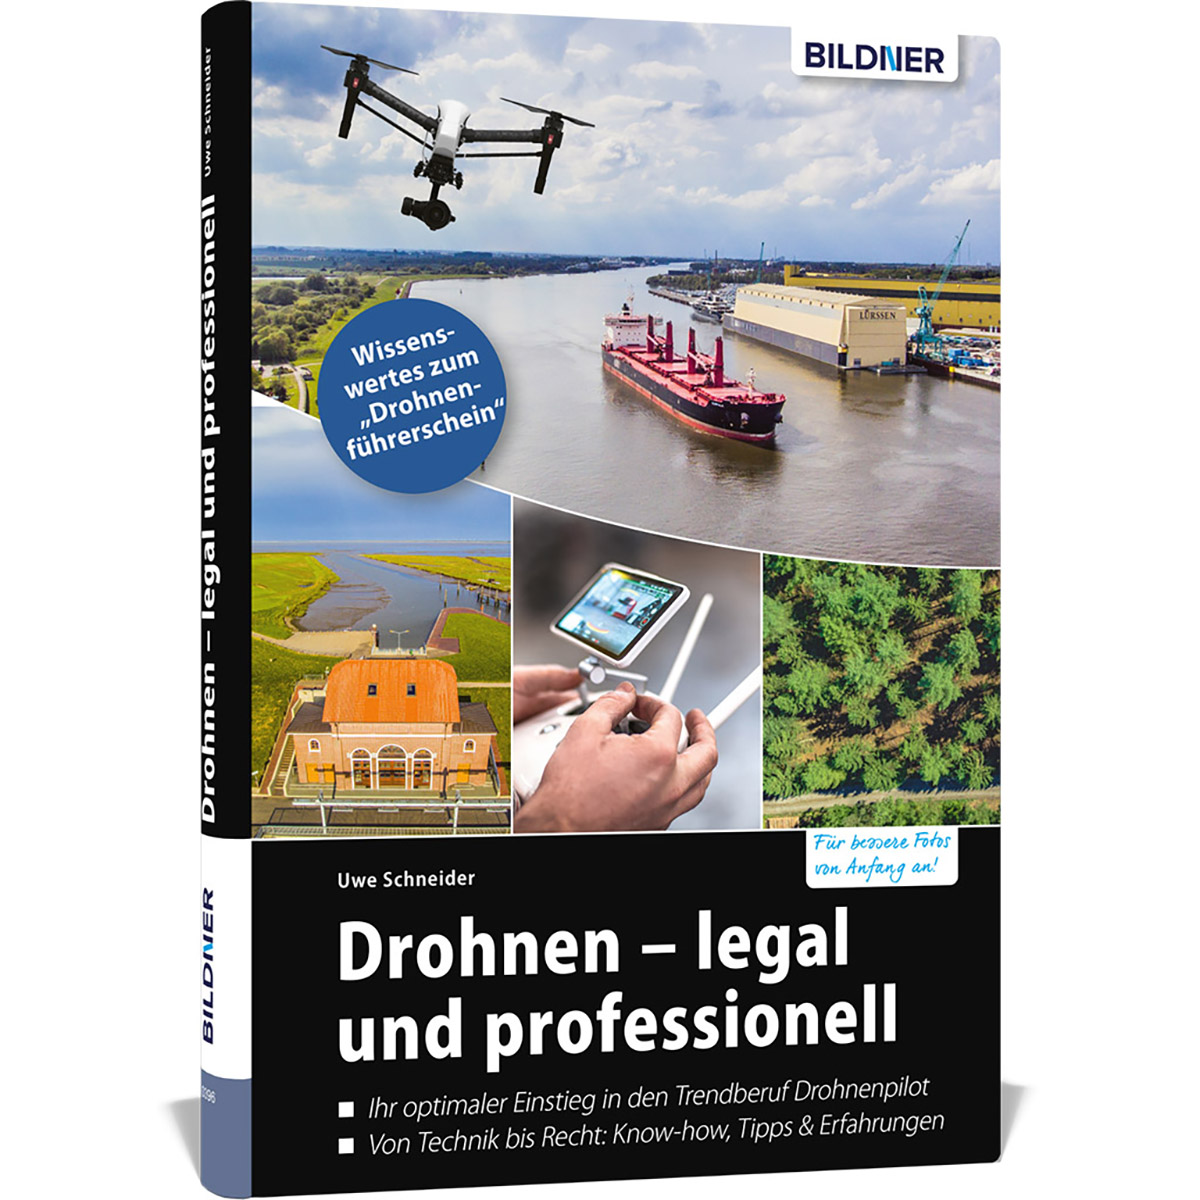 Drohnen legal und - professionell